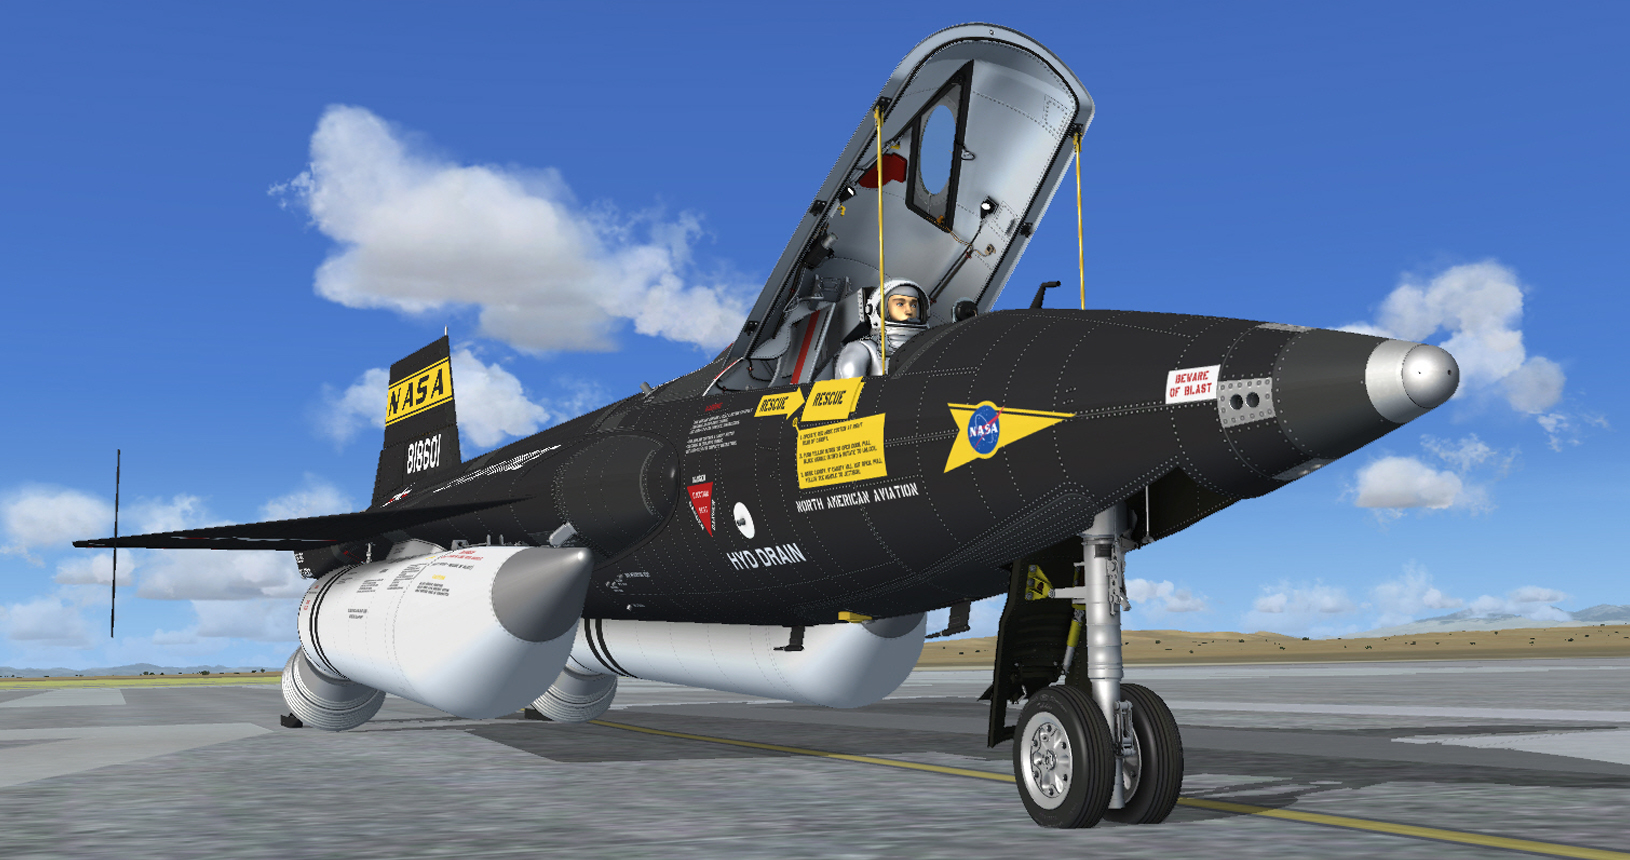 XP X-15A-2 SE v2.0